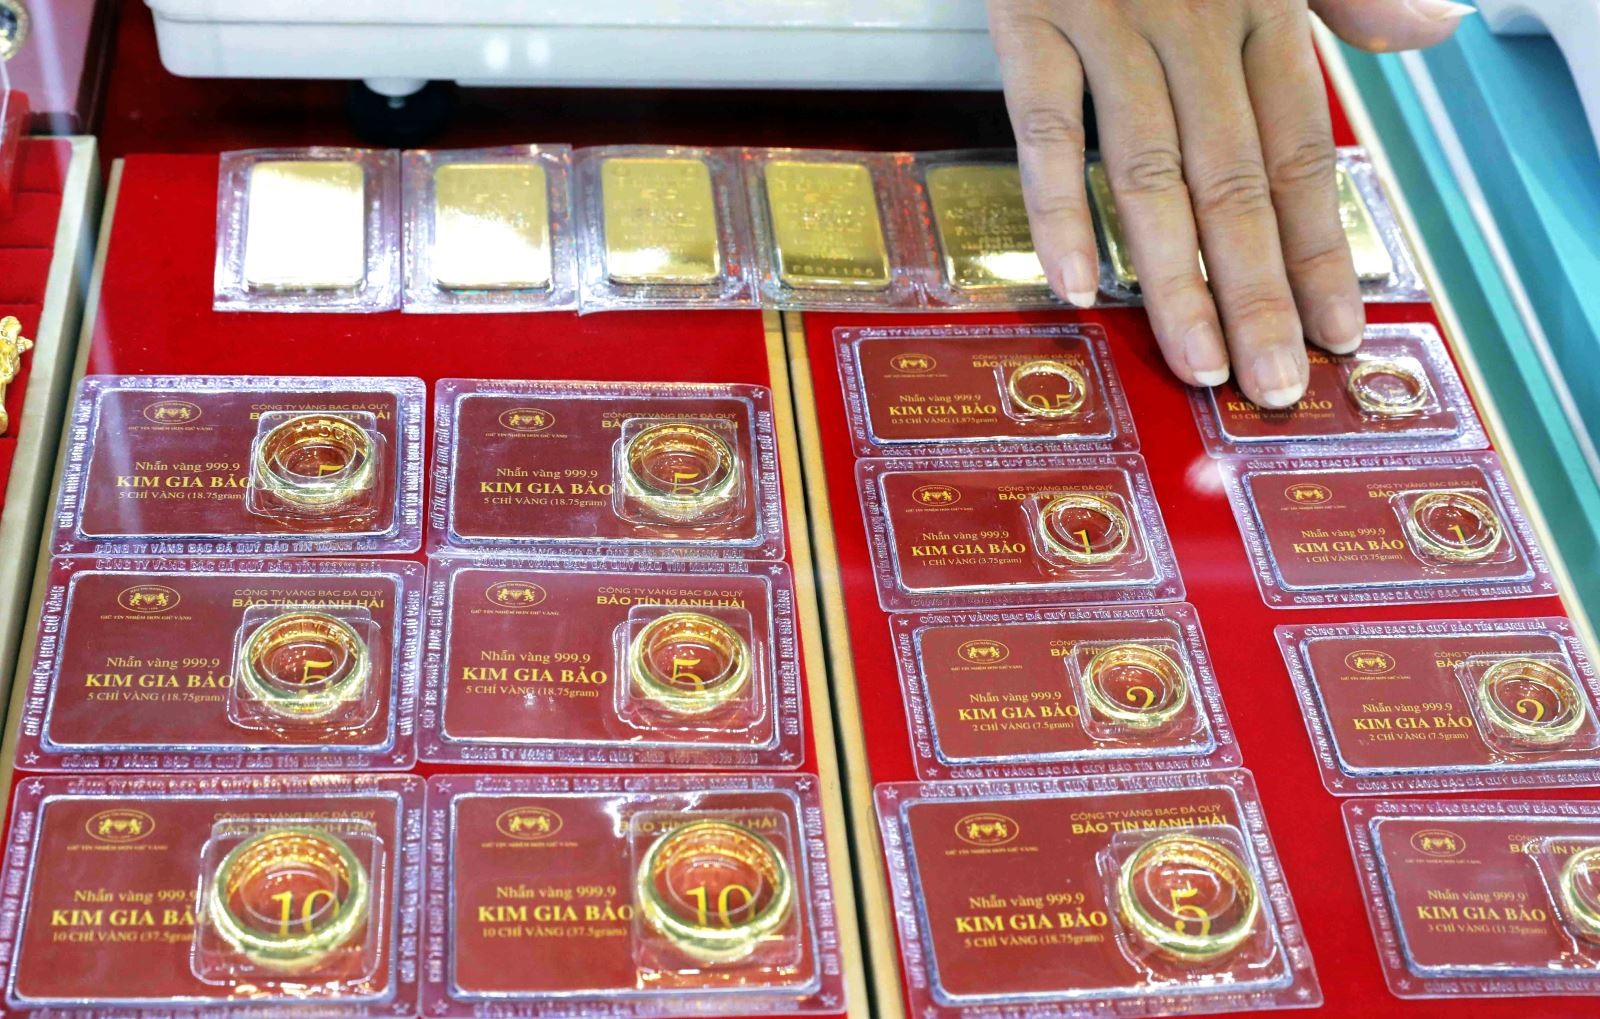 
Giá vàng trong nước đảo chiều tăng vượt 65,5 triệu đồng/lượng bán ra
